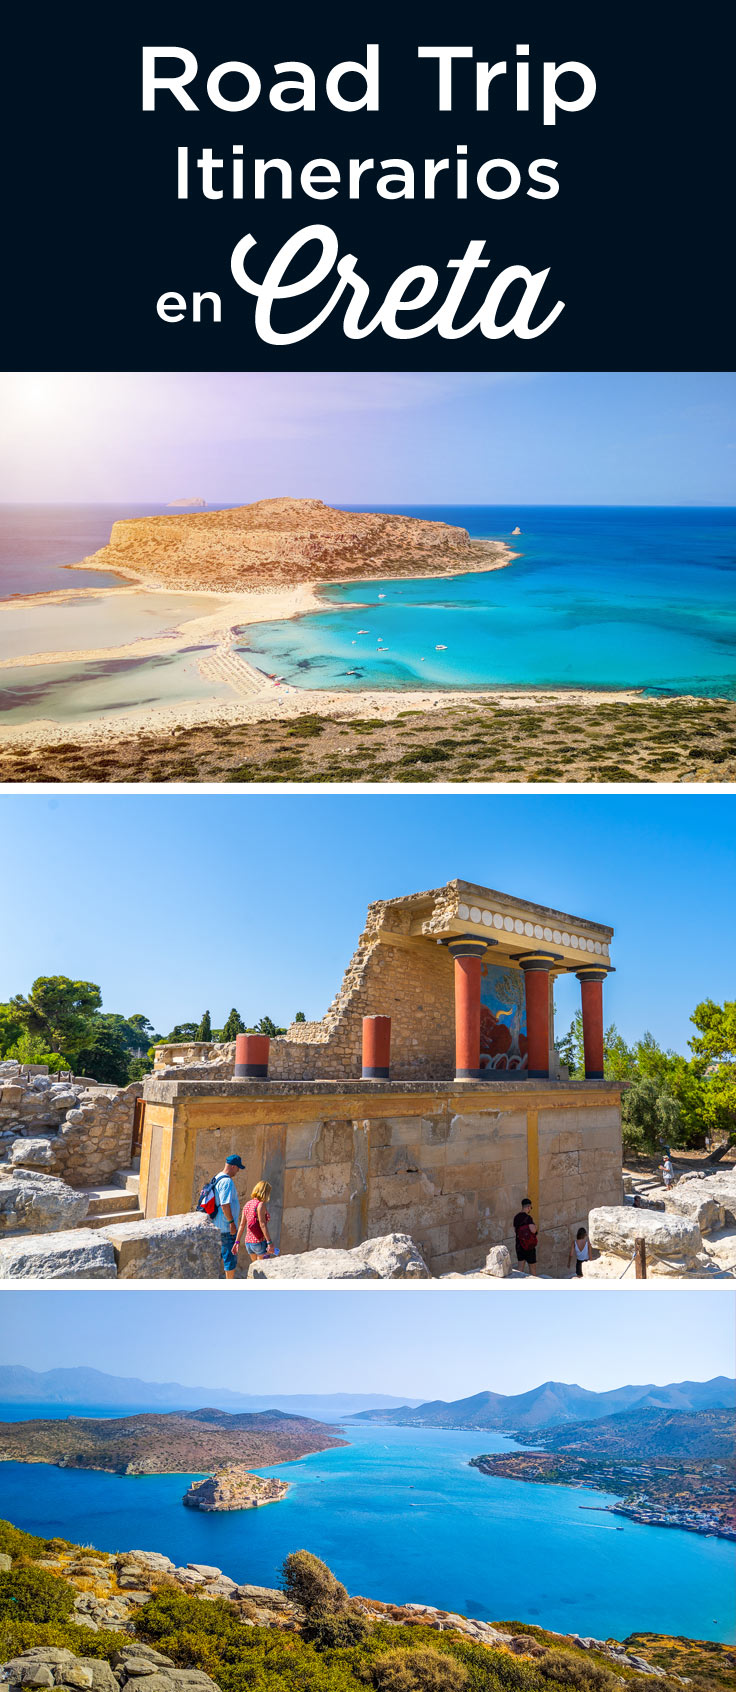 Creta road trip itinerario